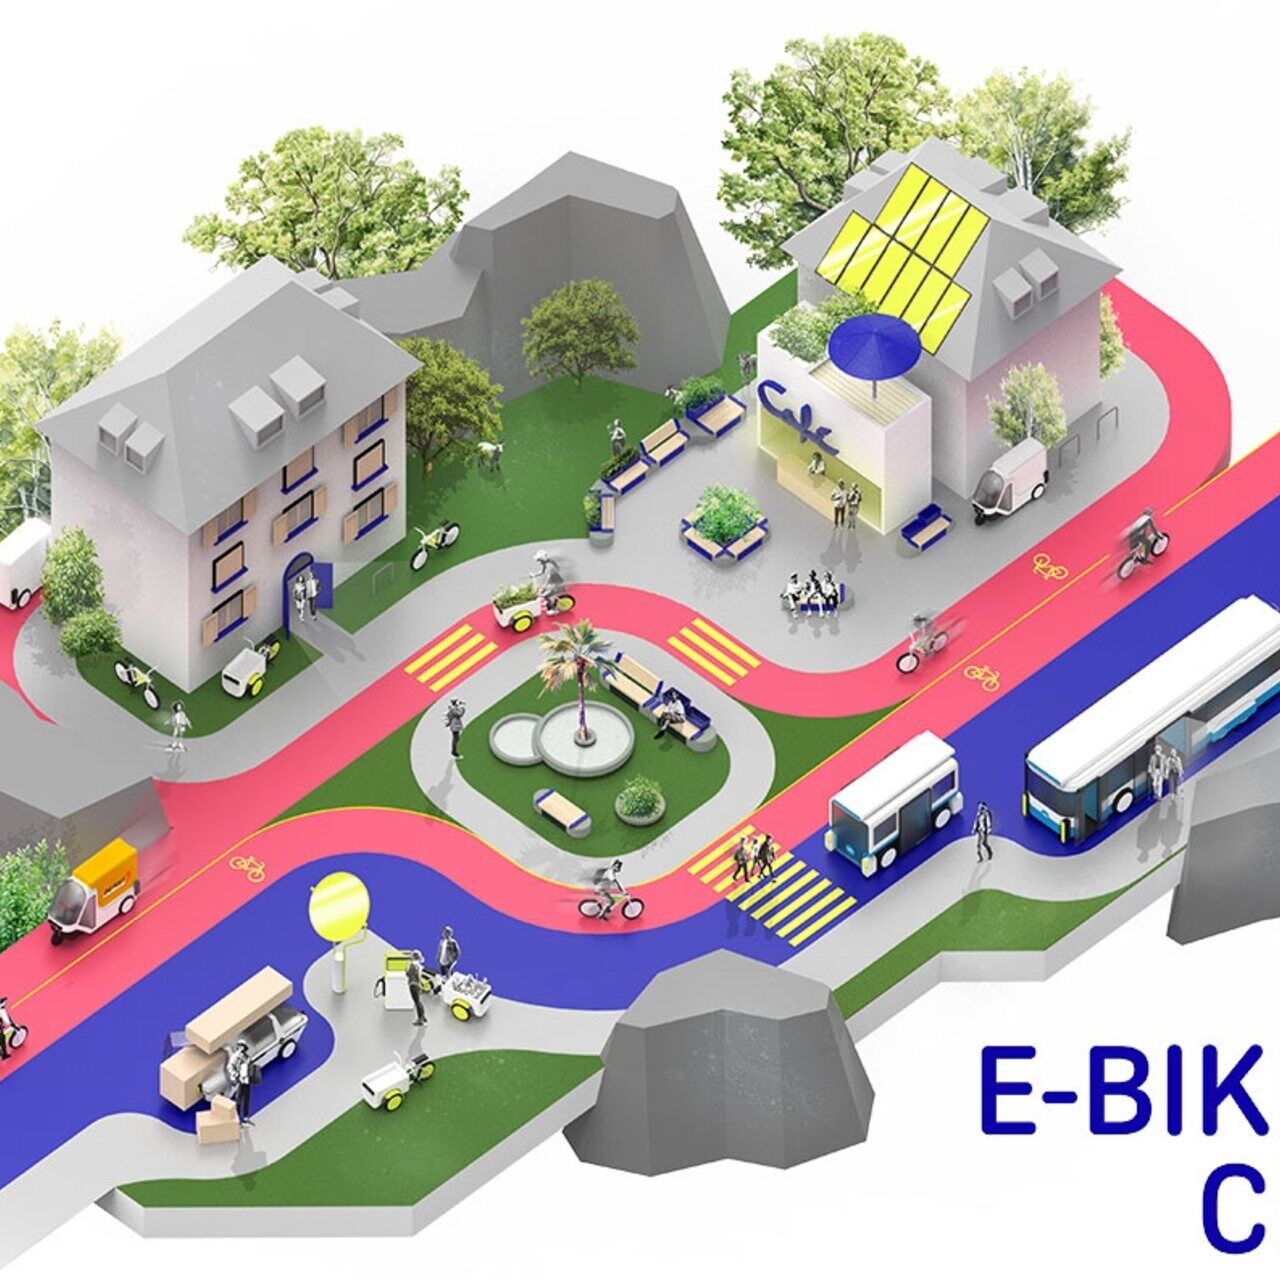 Elektriniai dviračiai: stilizuotas E-​Bike City pavyzdys su vienpusėmis gatvėmis automobiliams ir dviračio gatvėmis